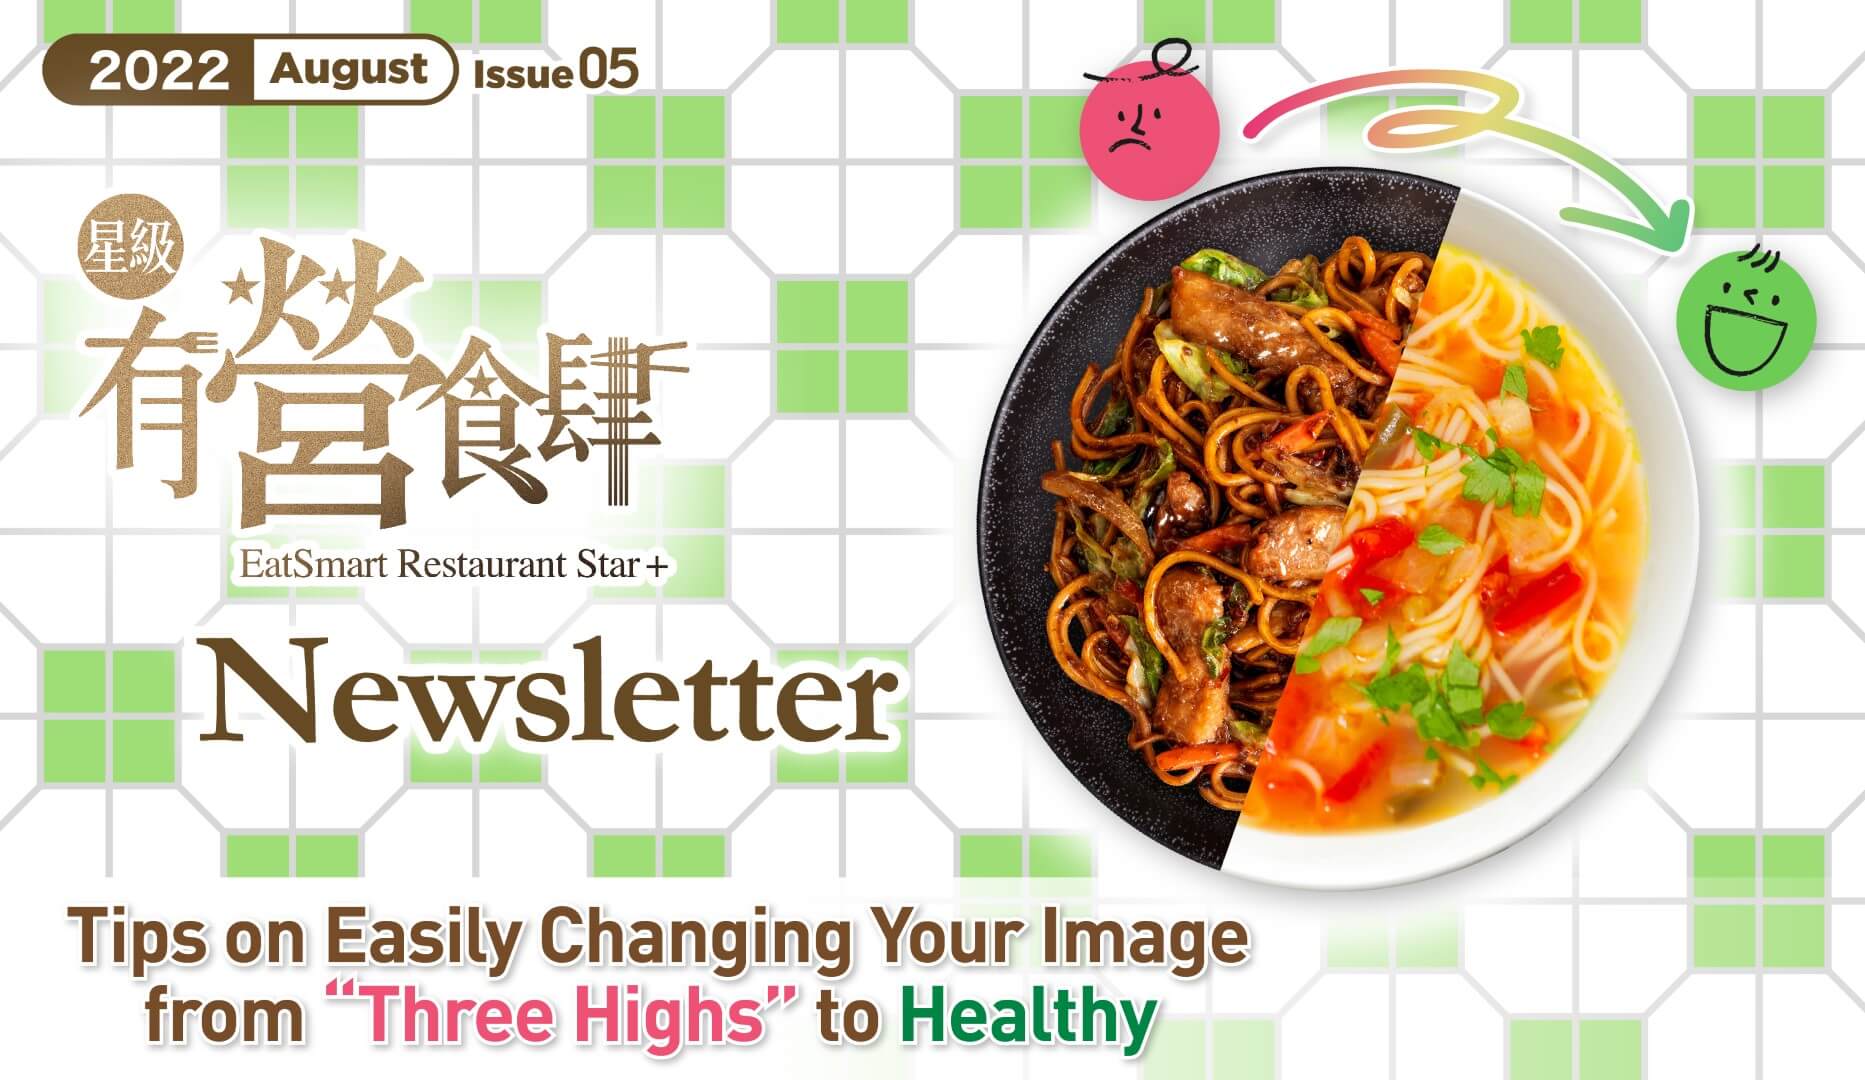 EatSmart Restaurant Star+ Newsletter 2022 5th Issue PDF version